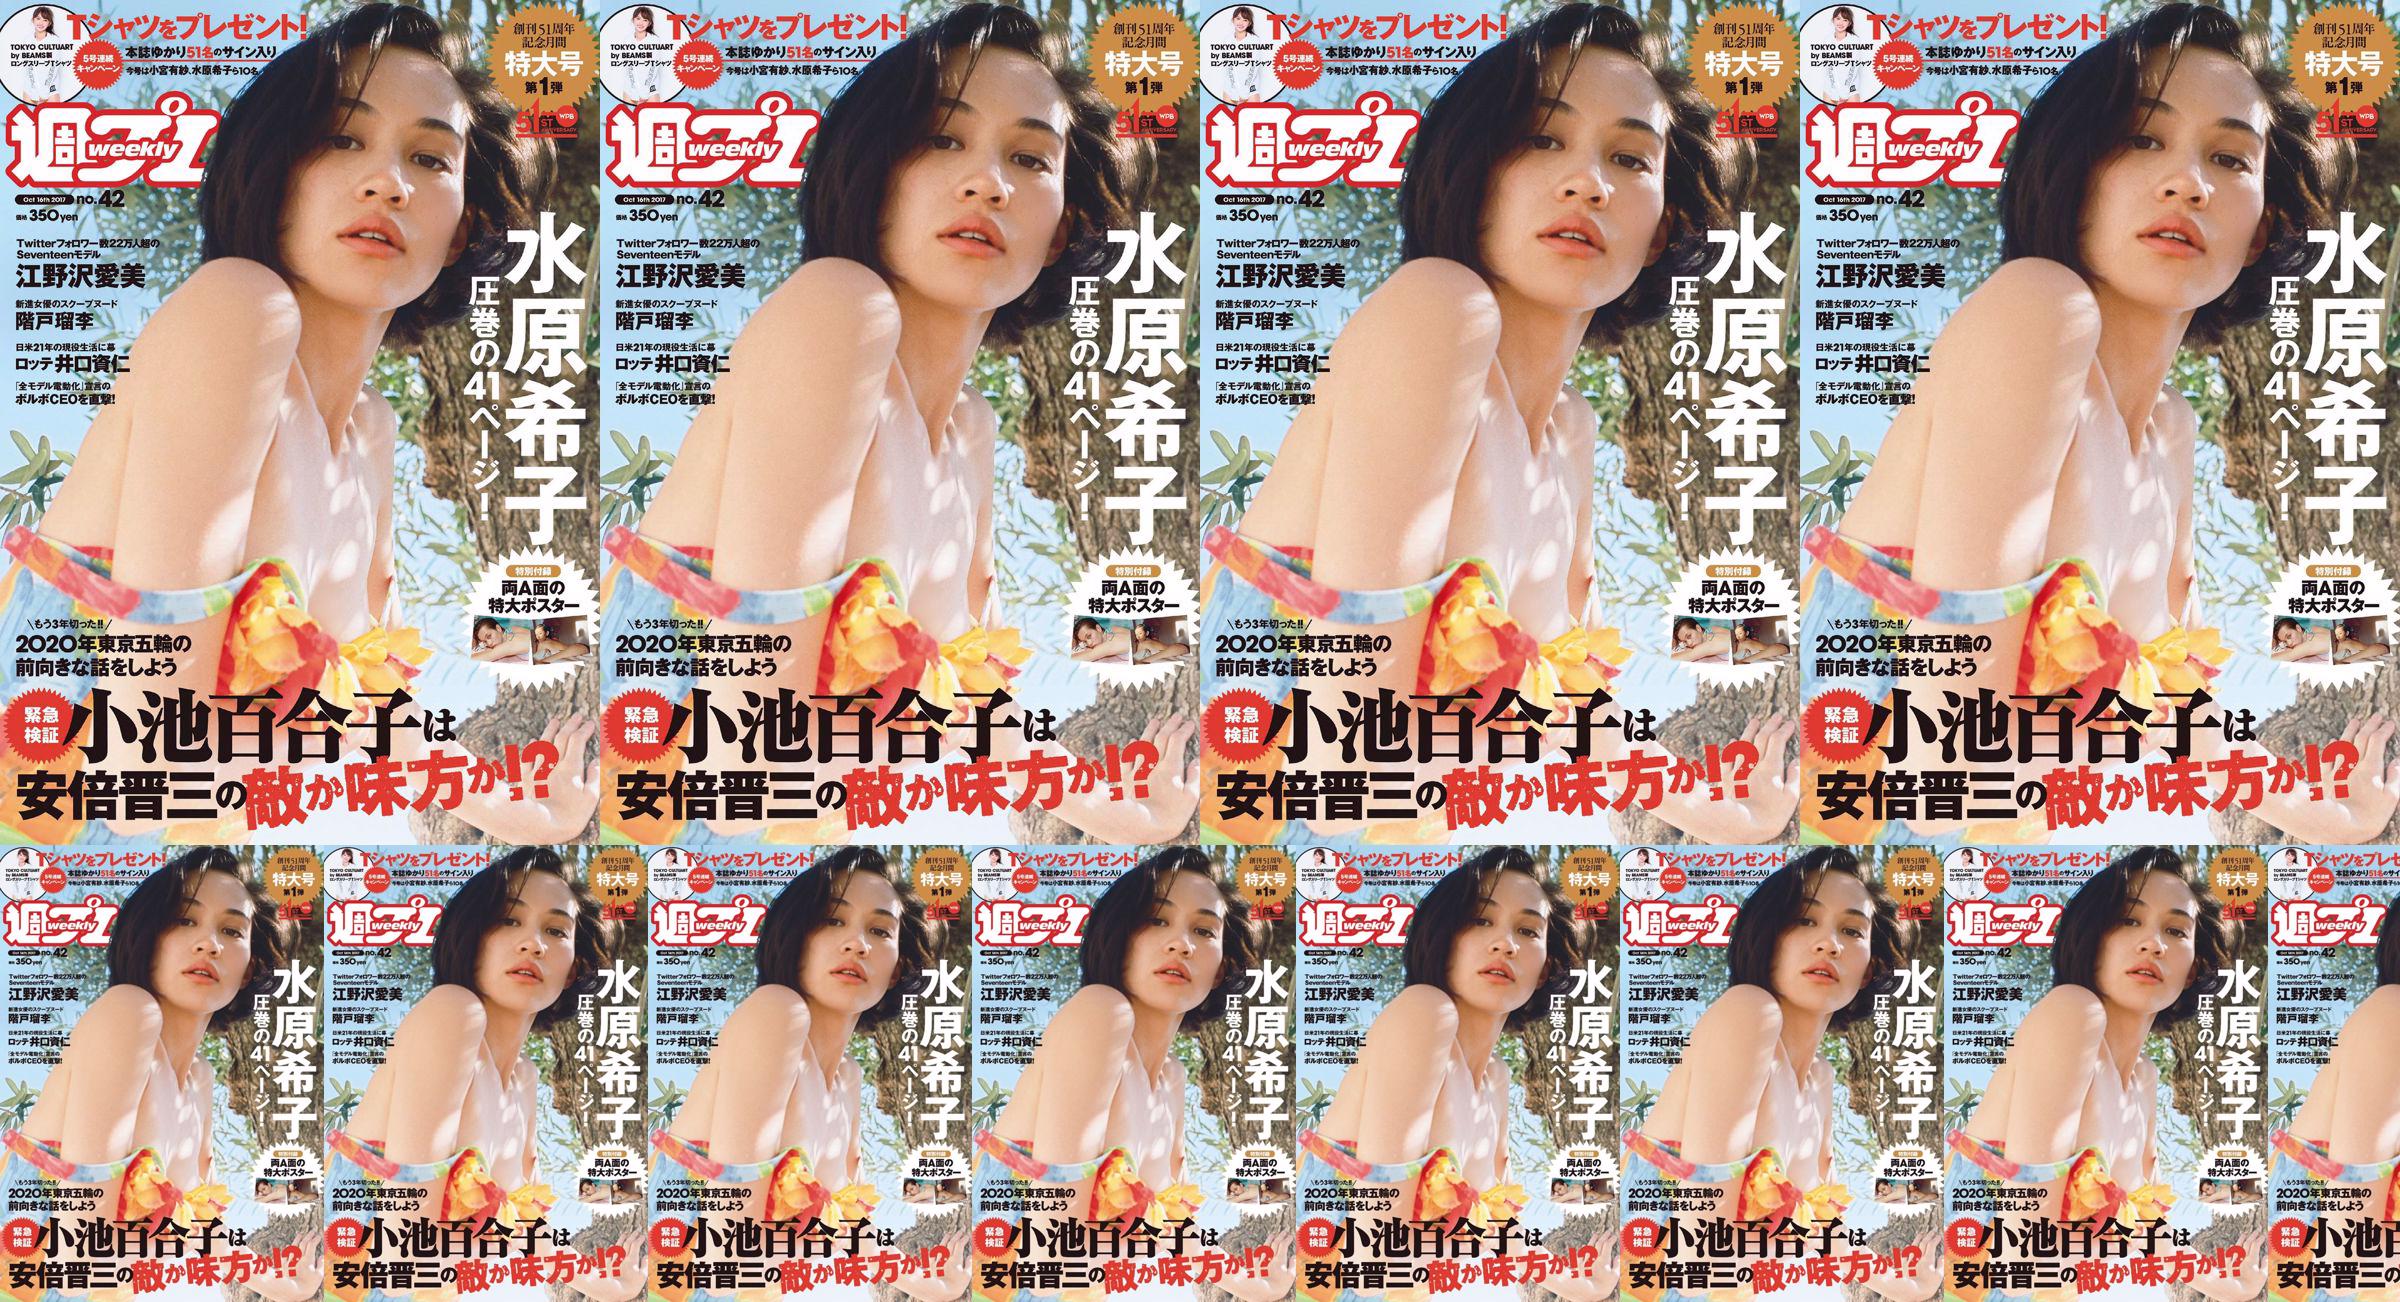 Kiko Mizuhara Manami Enosawa Serina Fukui Miu Nakamura Ruri Shinato [Weekly Playboy] 2017 No.42 Photo Magazine No.c1afc9 Page 7